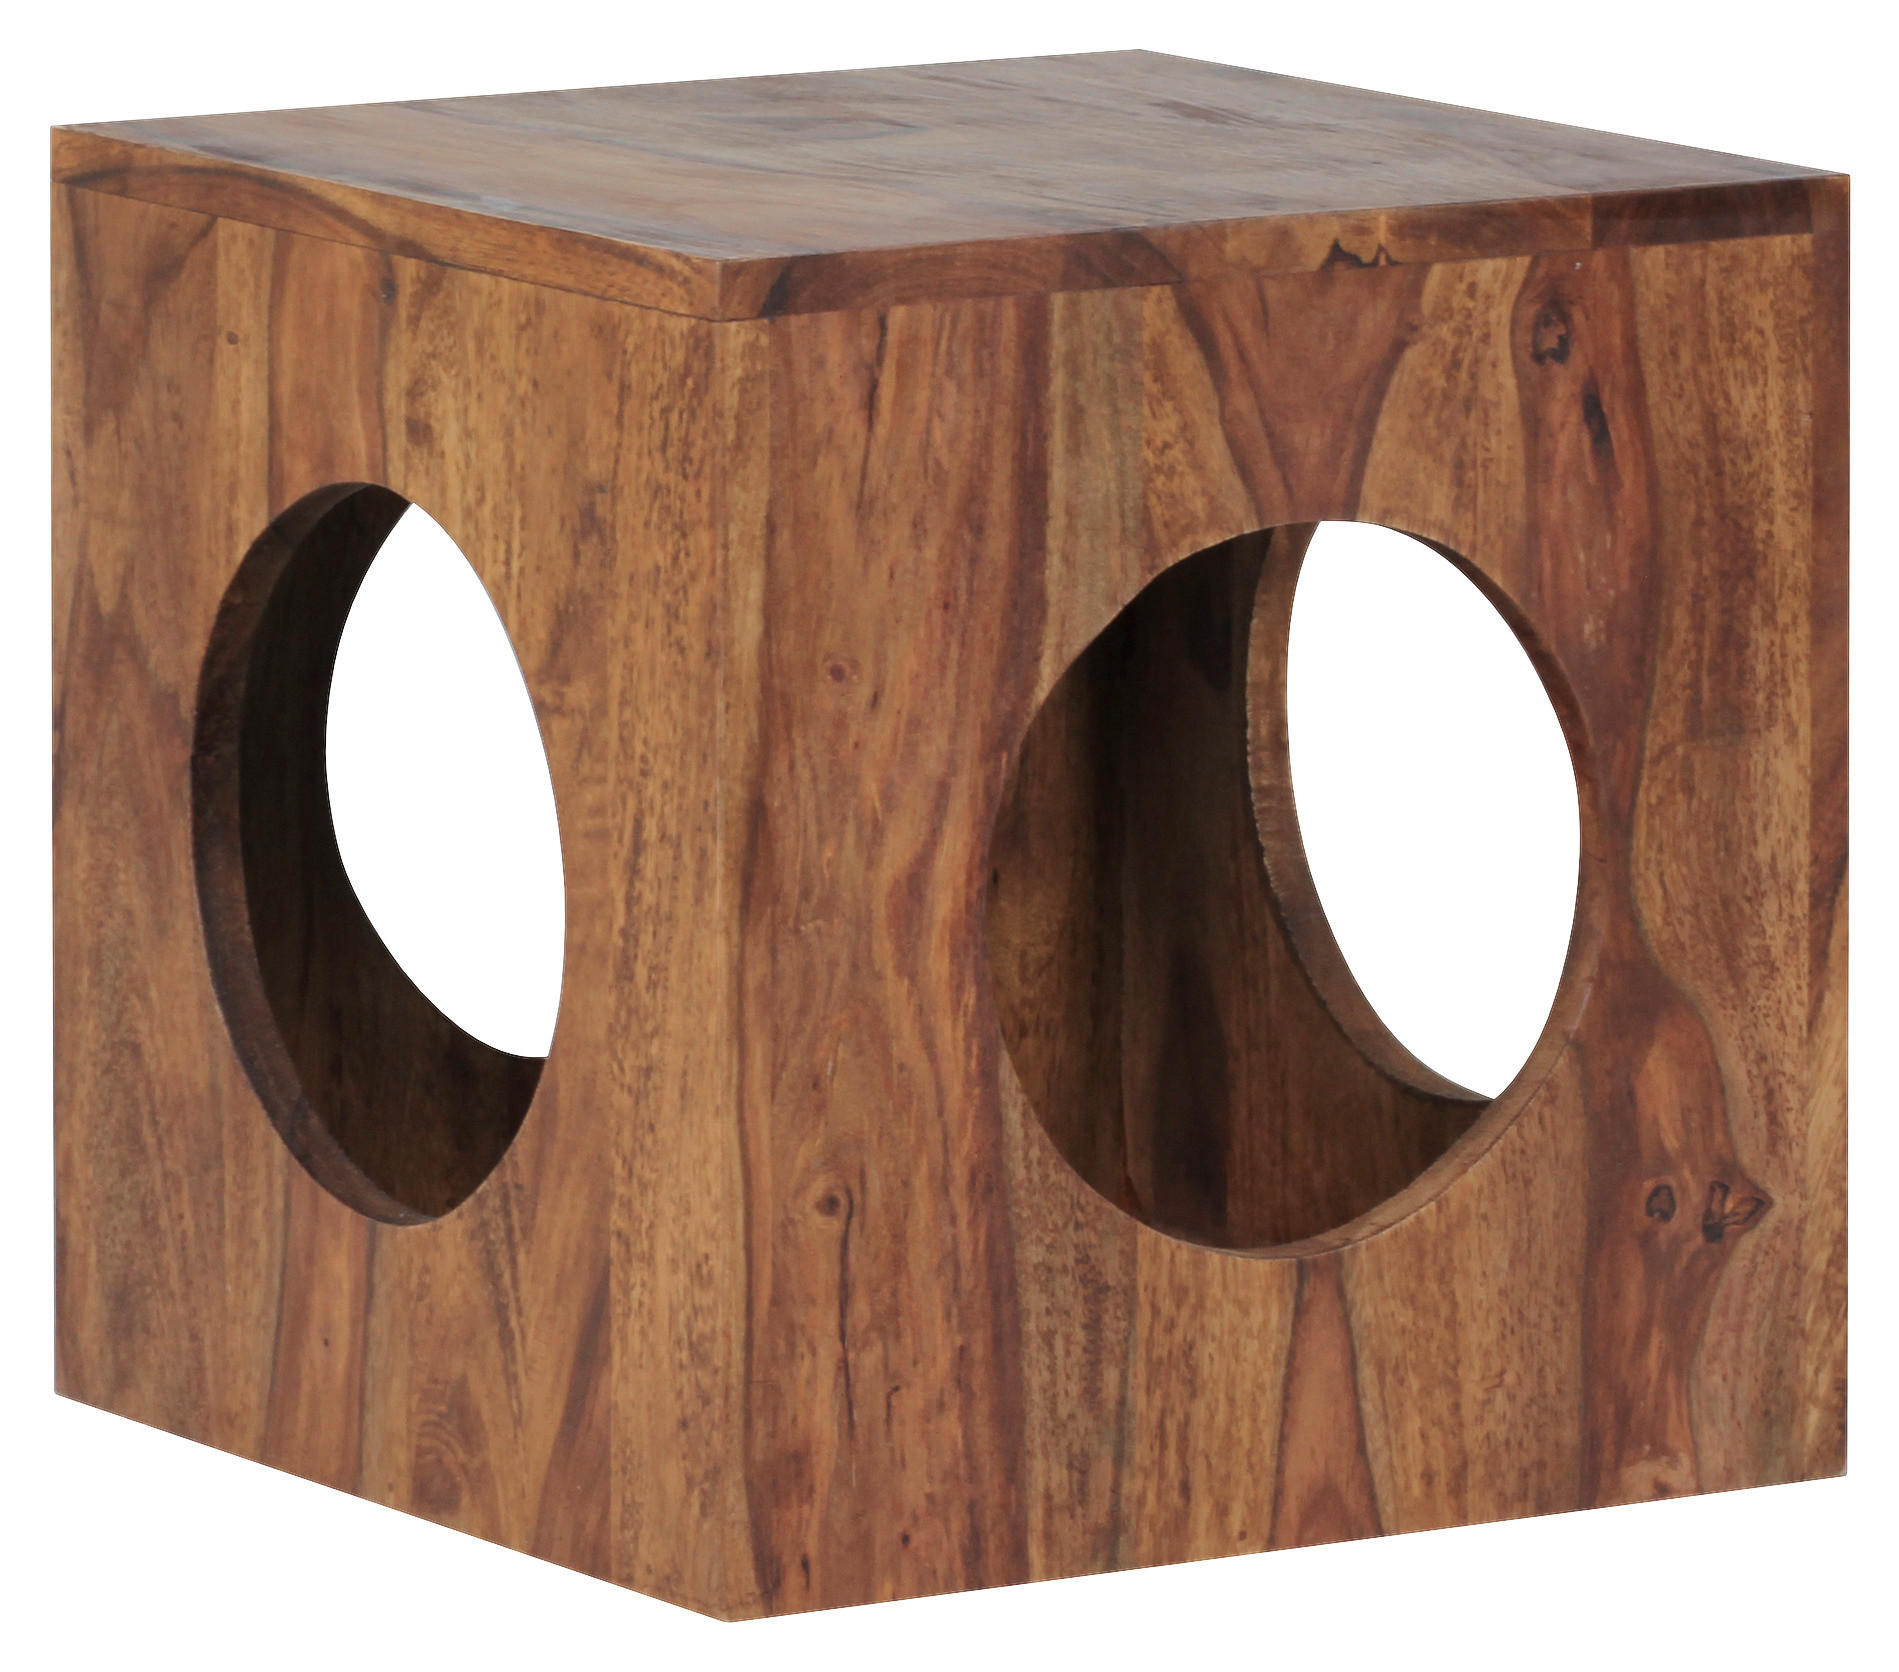 BEISTELLTISCH Sheesham massiv quadratisch Sheeshamfarben  - Sheeshamfarben, Design, Holz (35/35/35cm) - MID.YOU